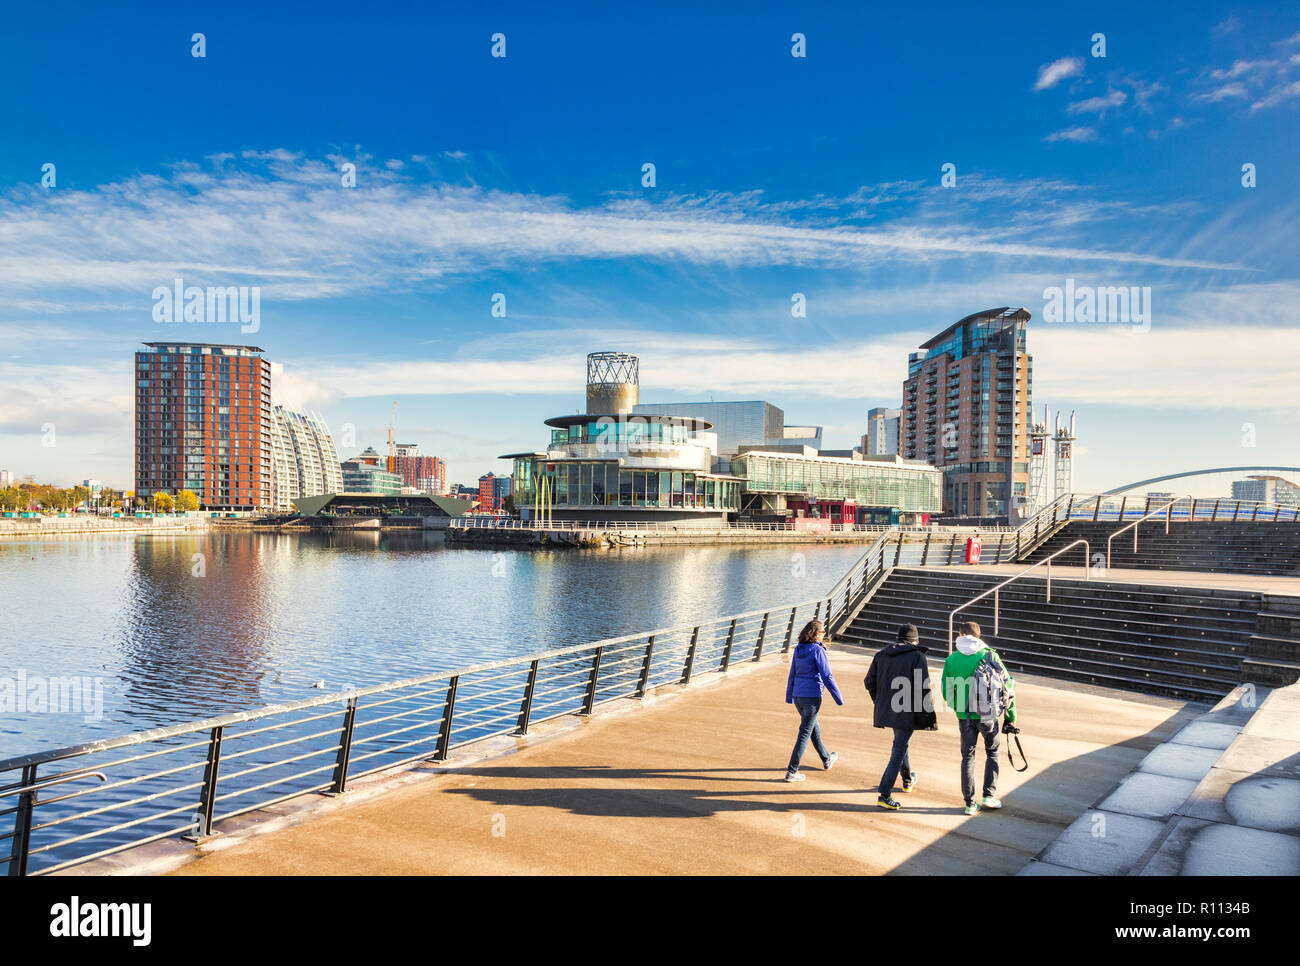 2 novembre 2018 : les quais de Salford, Manchester, UK - trois jeunes touristes flânant près du Manchester Ship Canal. Banque D'Images